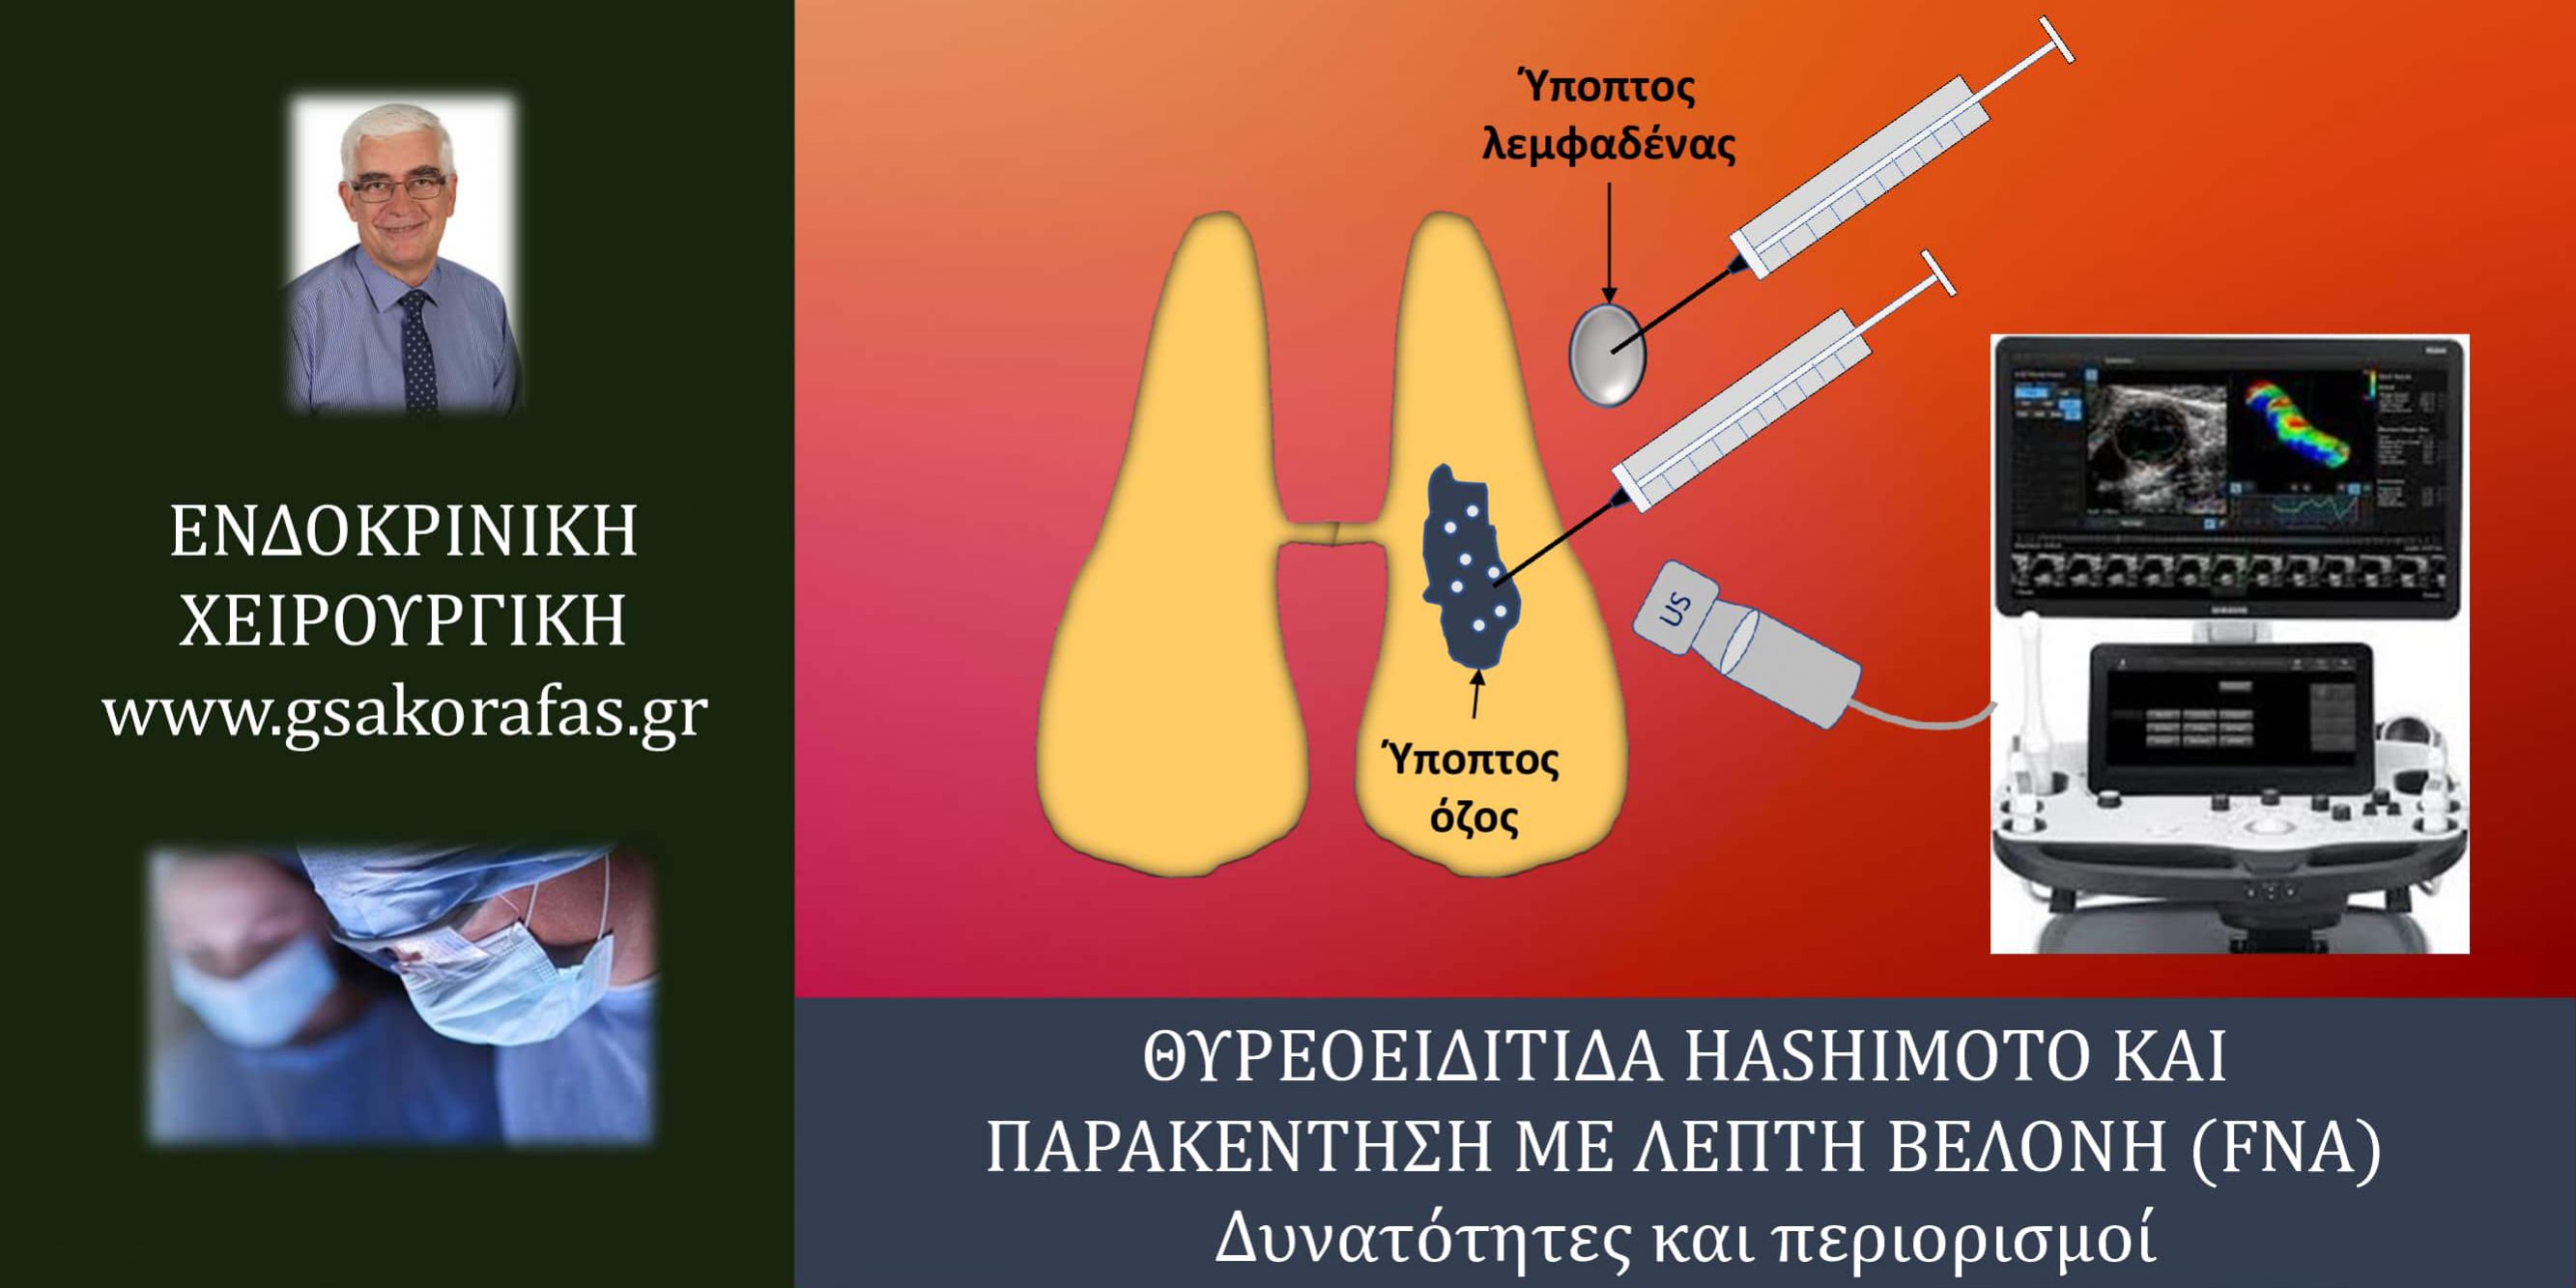 Θυρεοειδίτιδα Hashimoto και παρακέντηση με λεπτή βελόνη (FNA) – σημασία στην πράξη και περιορισμοί